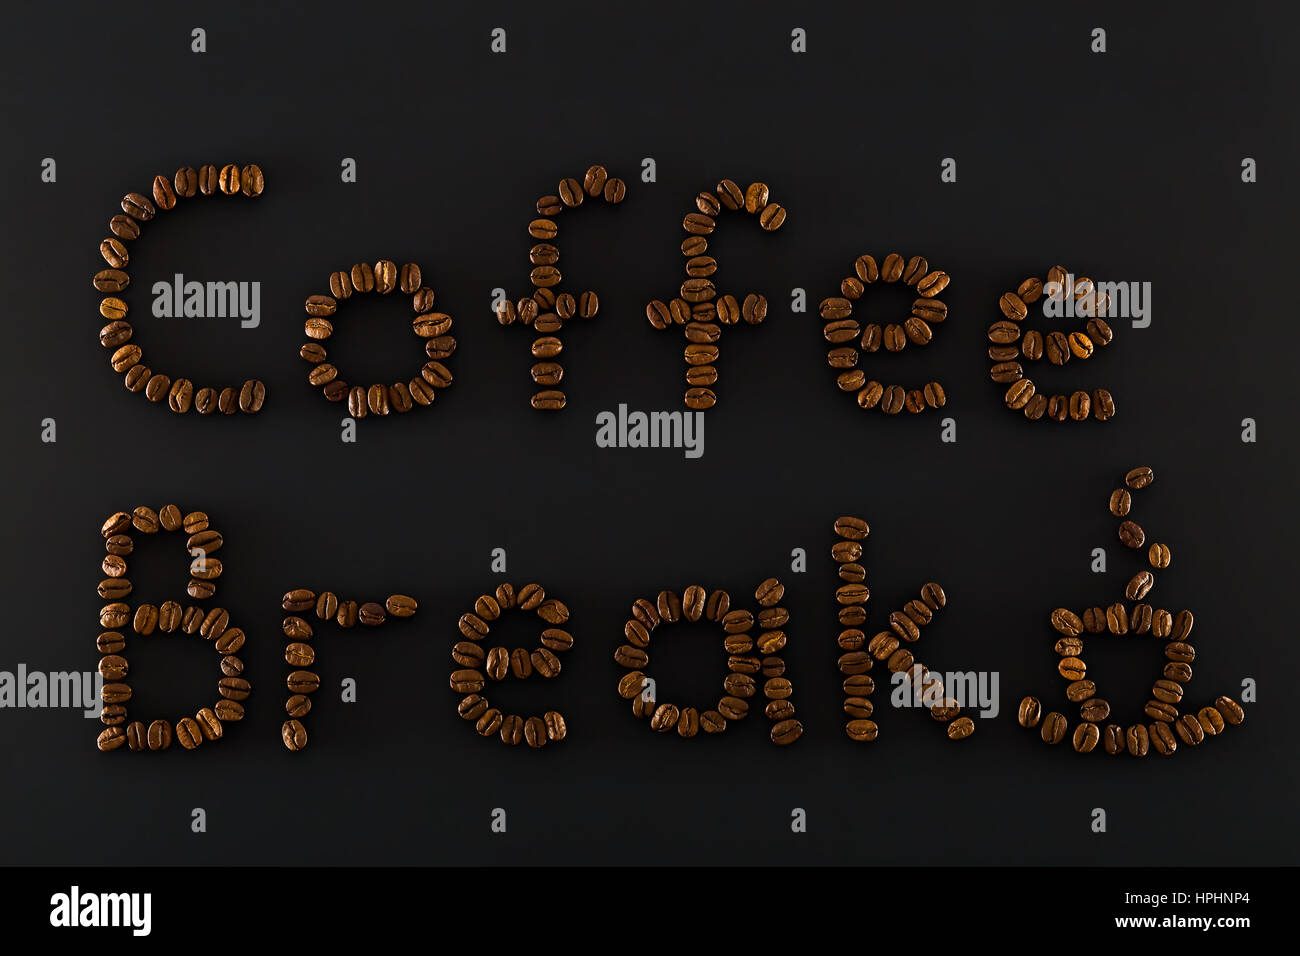 Pausa caffè parole e cup sono costituiti da marrone a chicchi di caffè Foto Stock